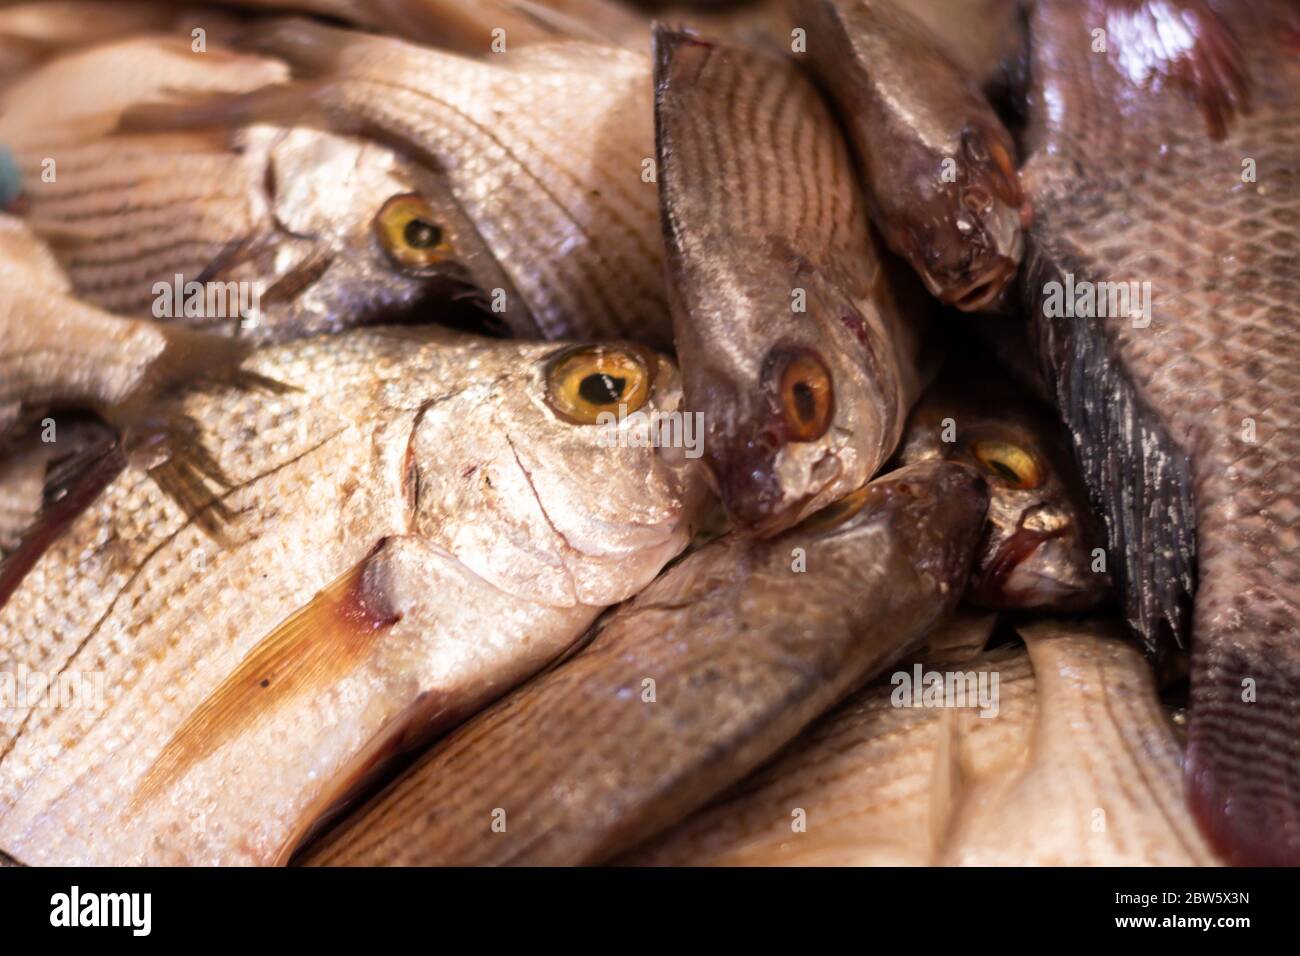 Pescado fresco en el mercado. Enfoque de alimentos marinos de escamas y piel de los peces del mar. Foto de stock